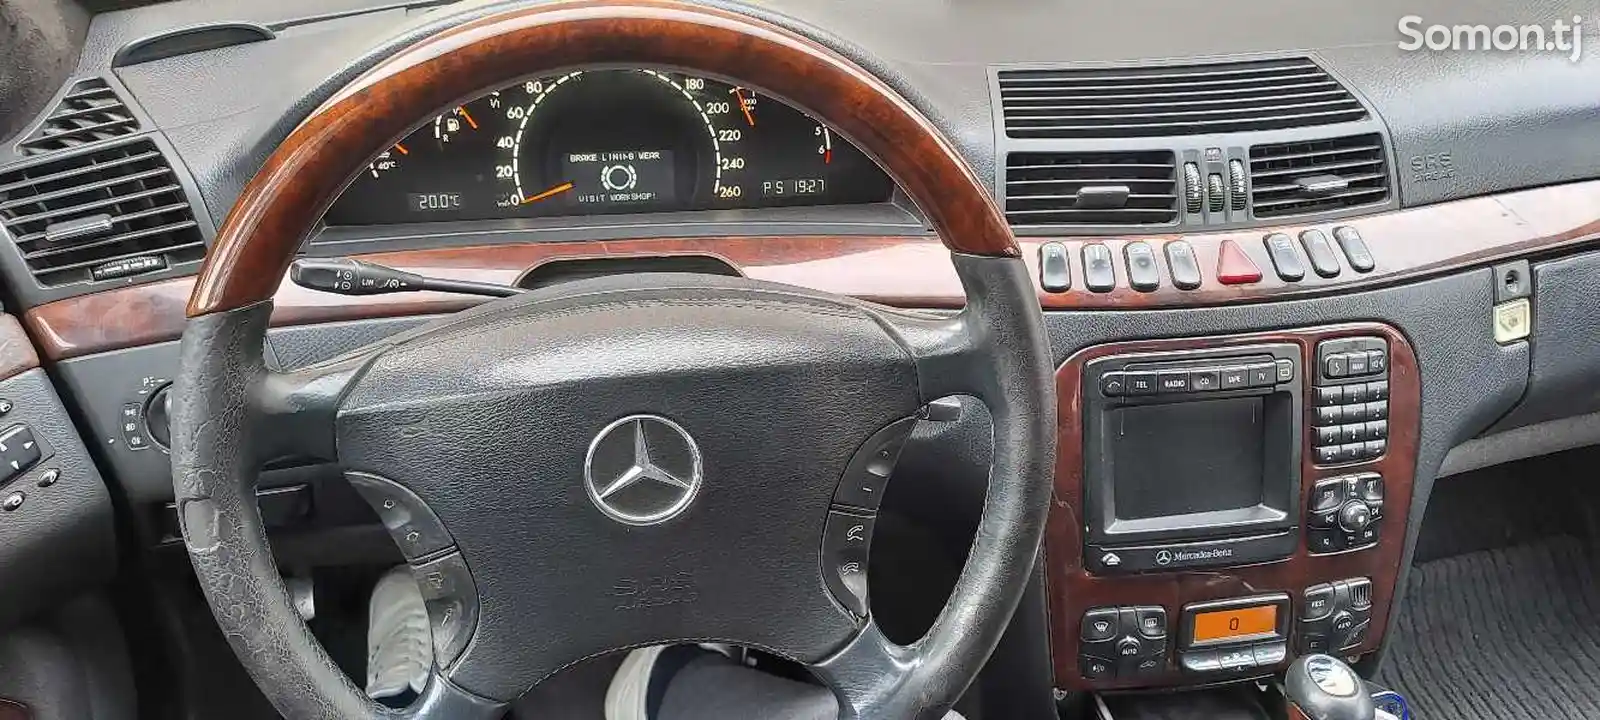 Mercedes-Benz S class, 2000-12